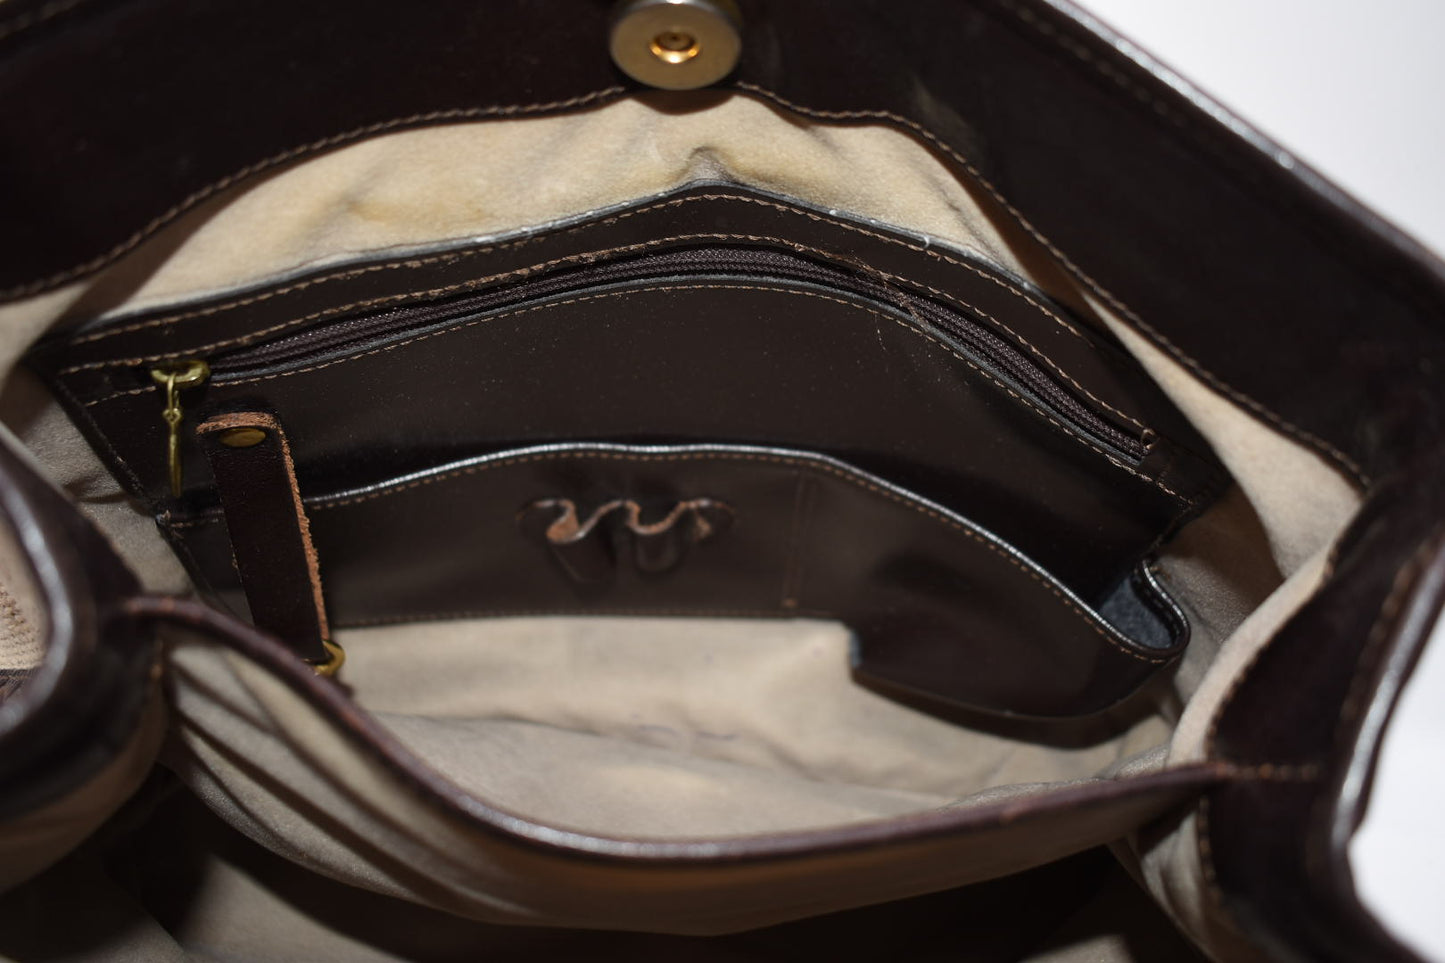 Brahmin Leather & Natural Canvas Shoulder Bag